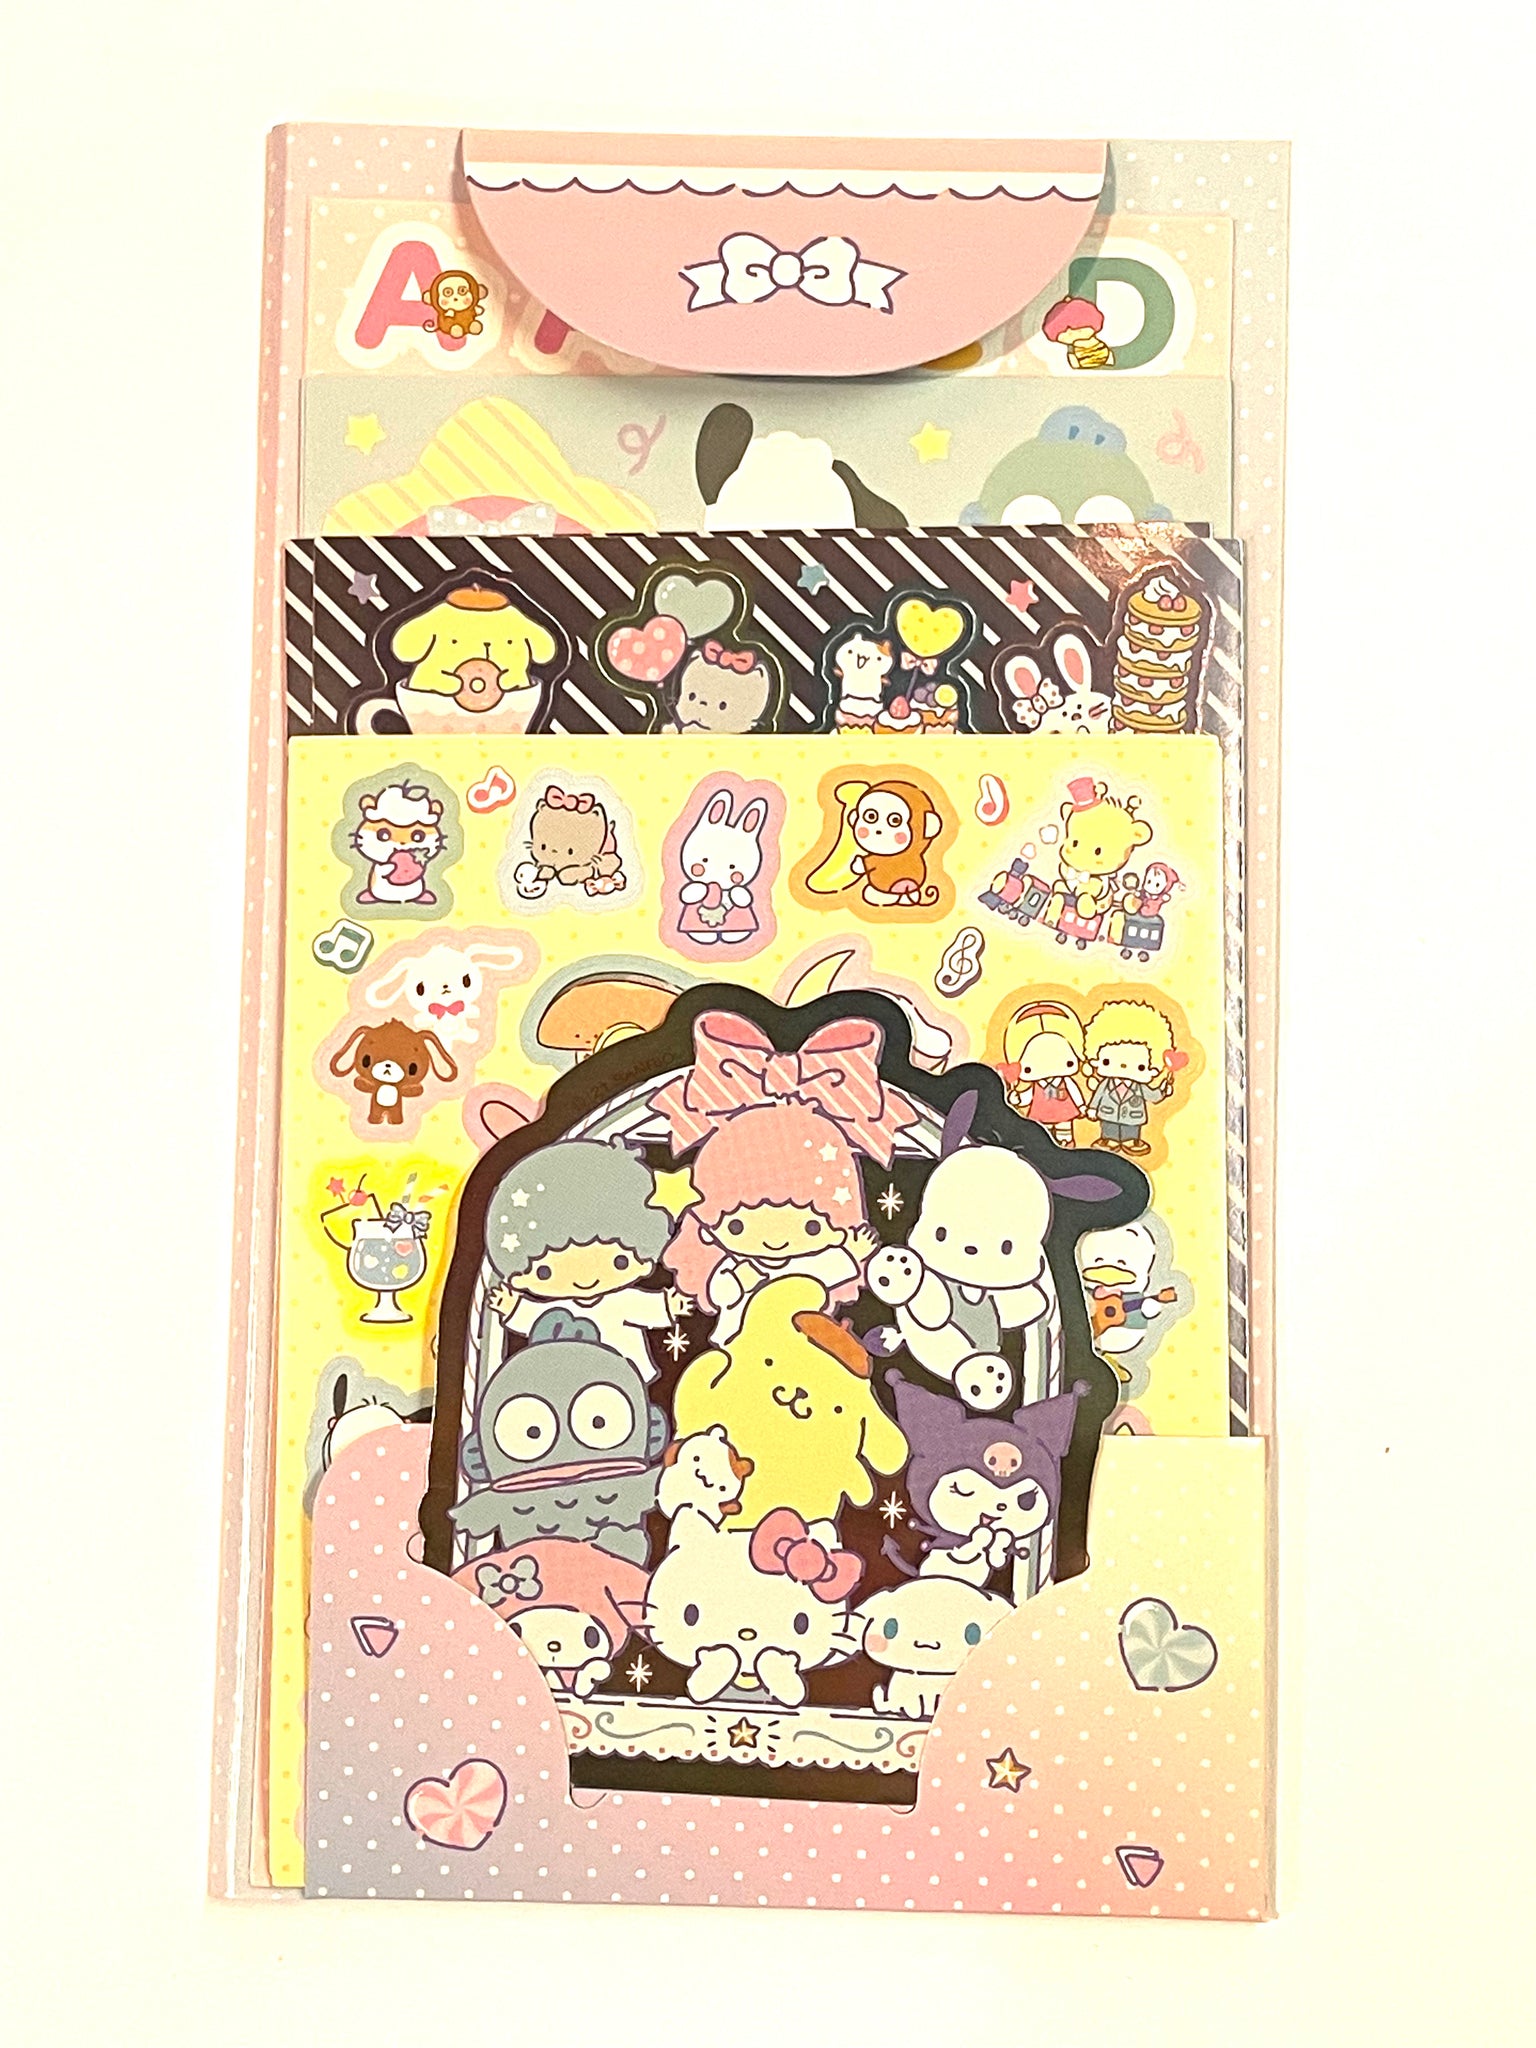 Sanrio Characters Summer Lantern Sticker Hello Kitty